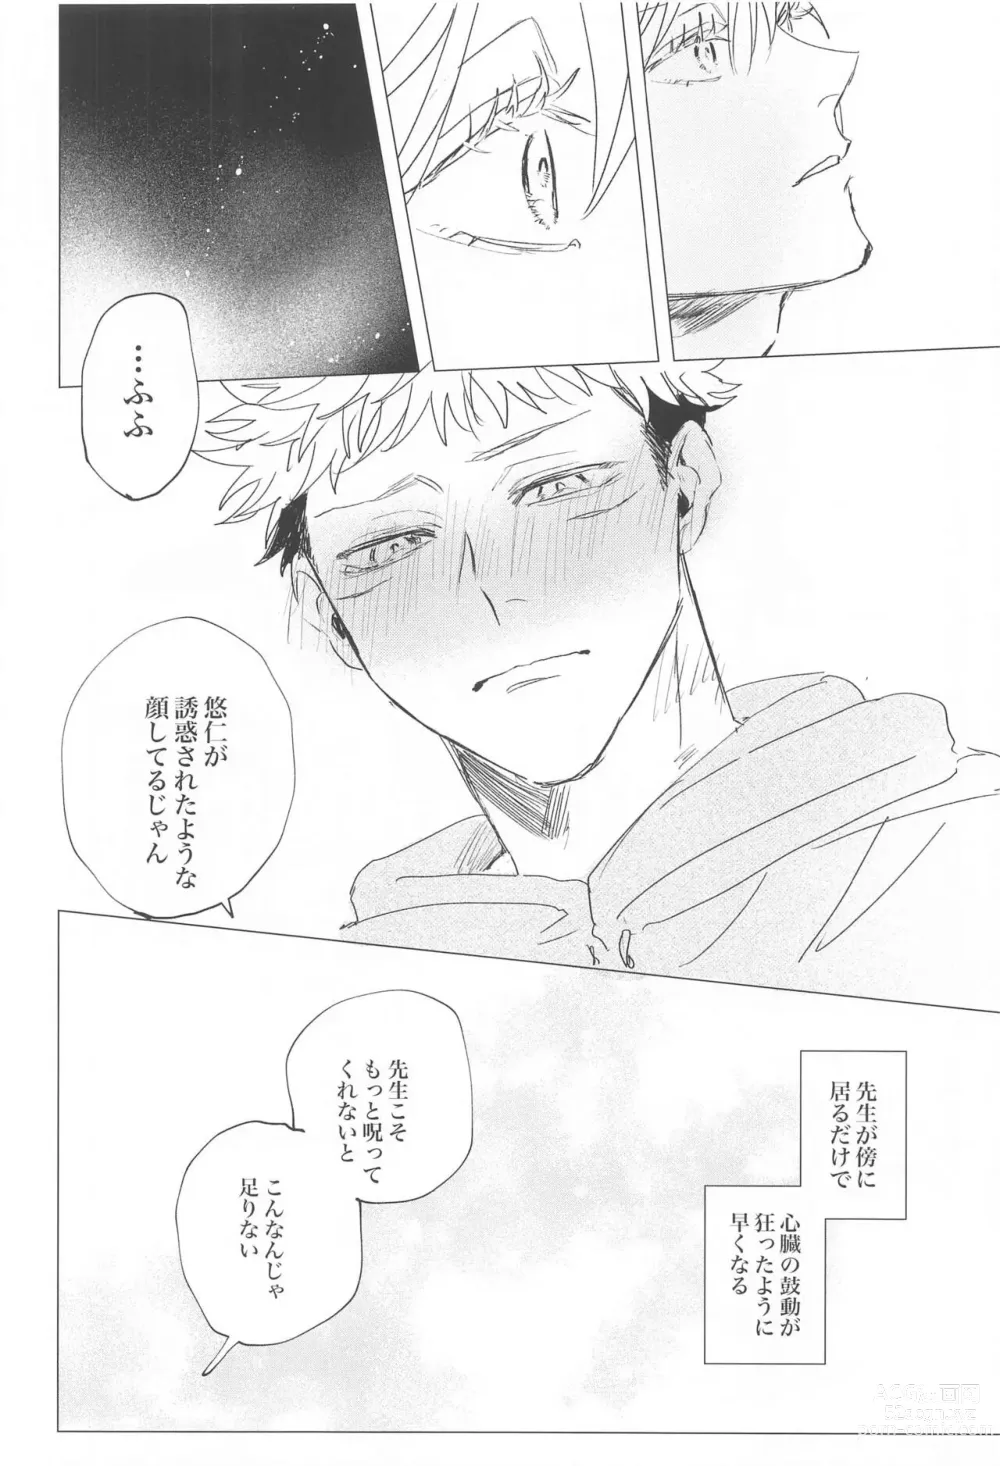 Page 11 of doujinshi Kawaii Hito